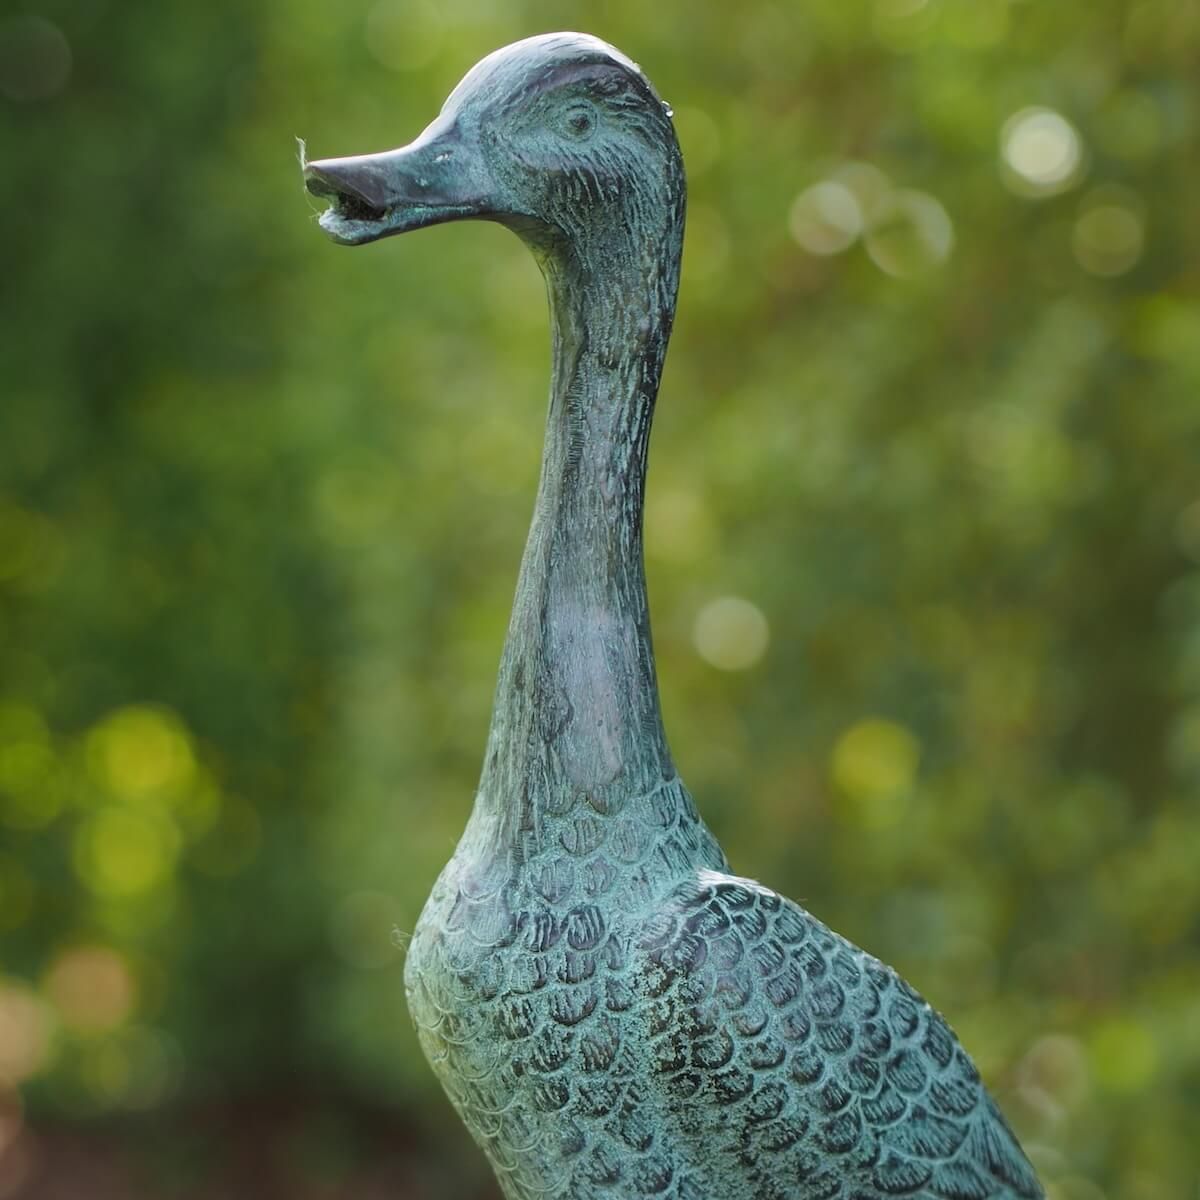 Bronzeskulptur kleine stehende Ente aus Bronze Gartenfigur Dekoration 